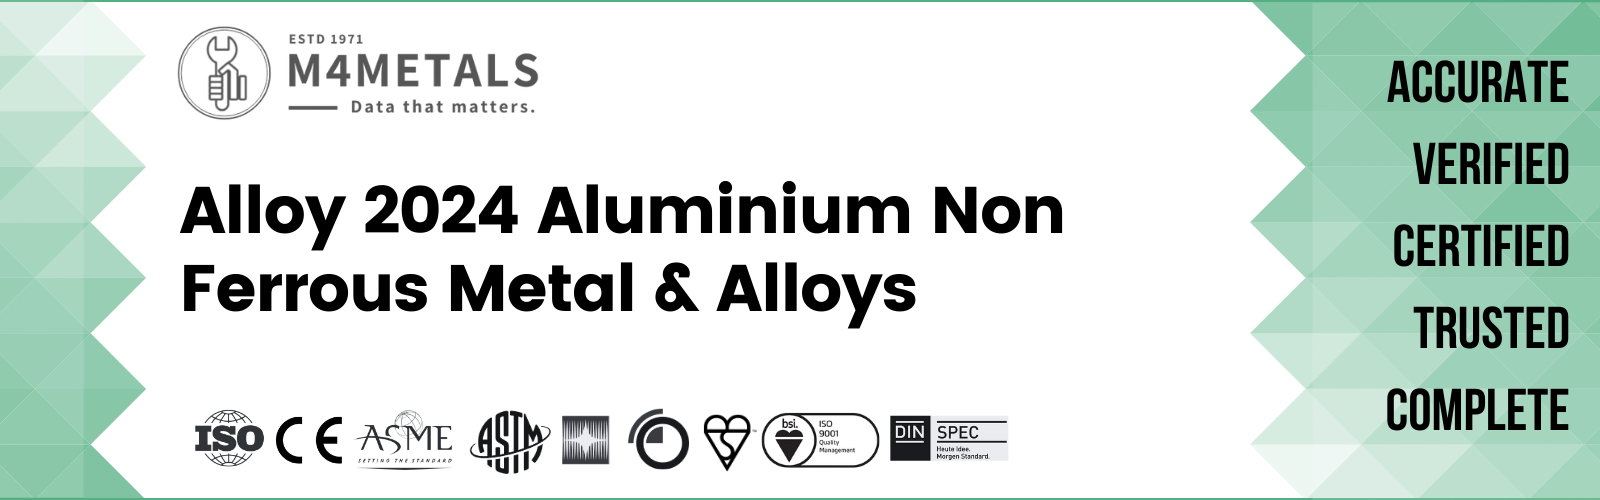 Aluminium Alloy 2024